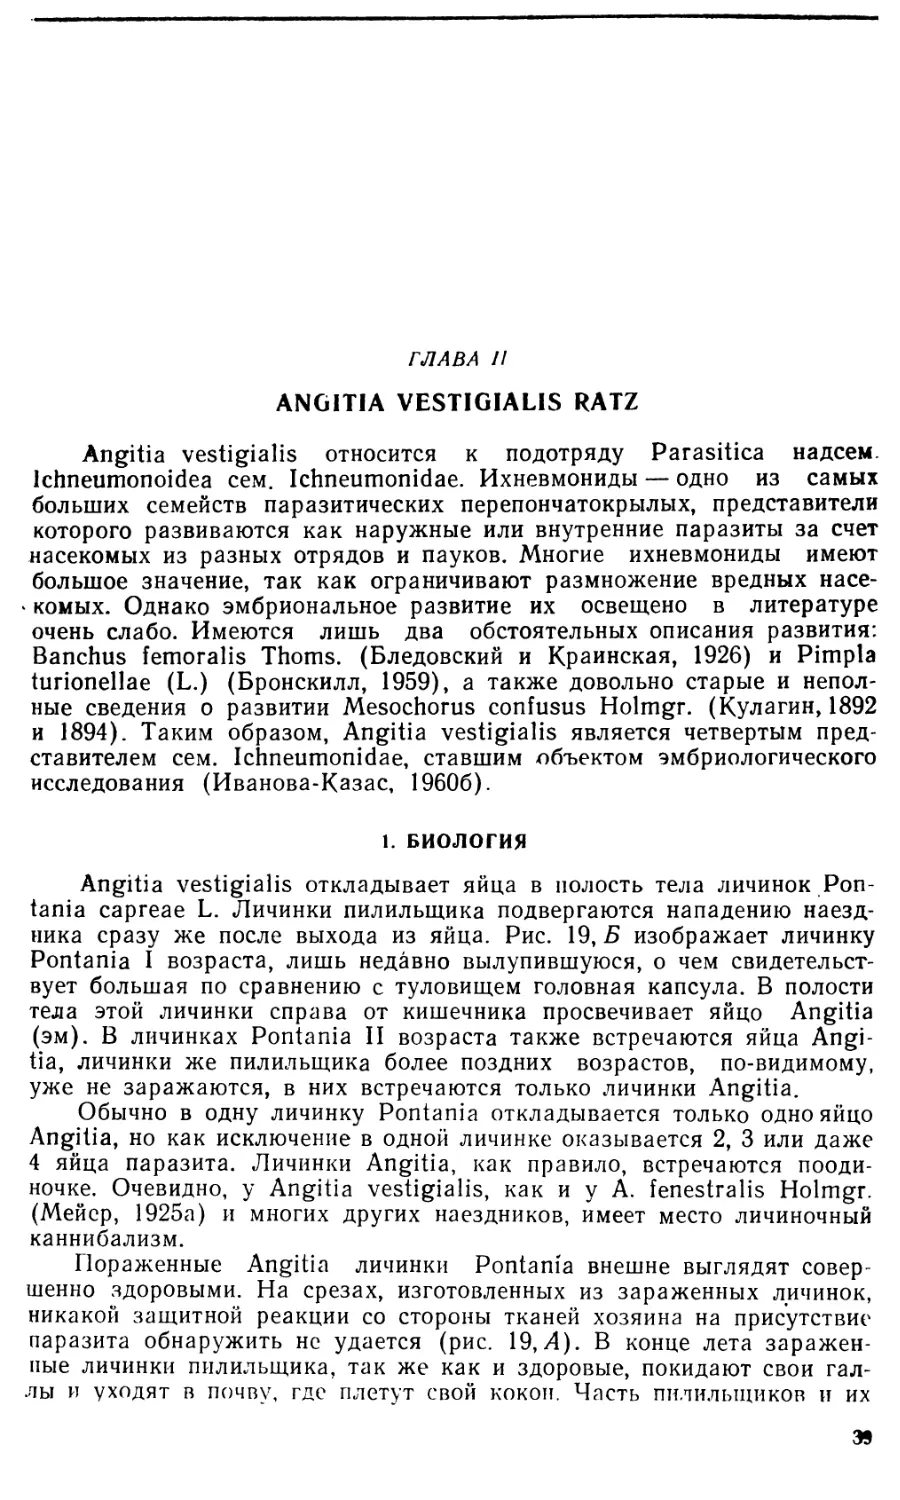 Глава II. Angitia vestigialis Ratz.